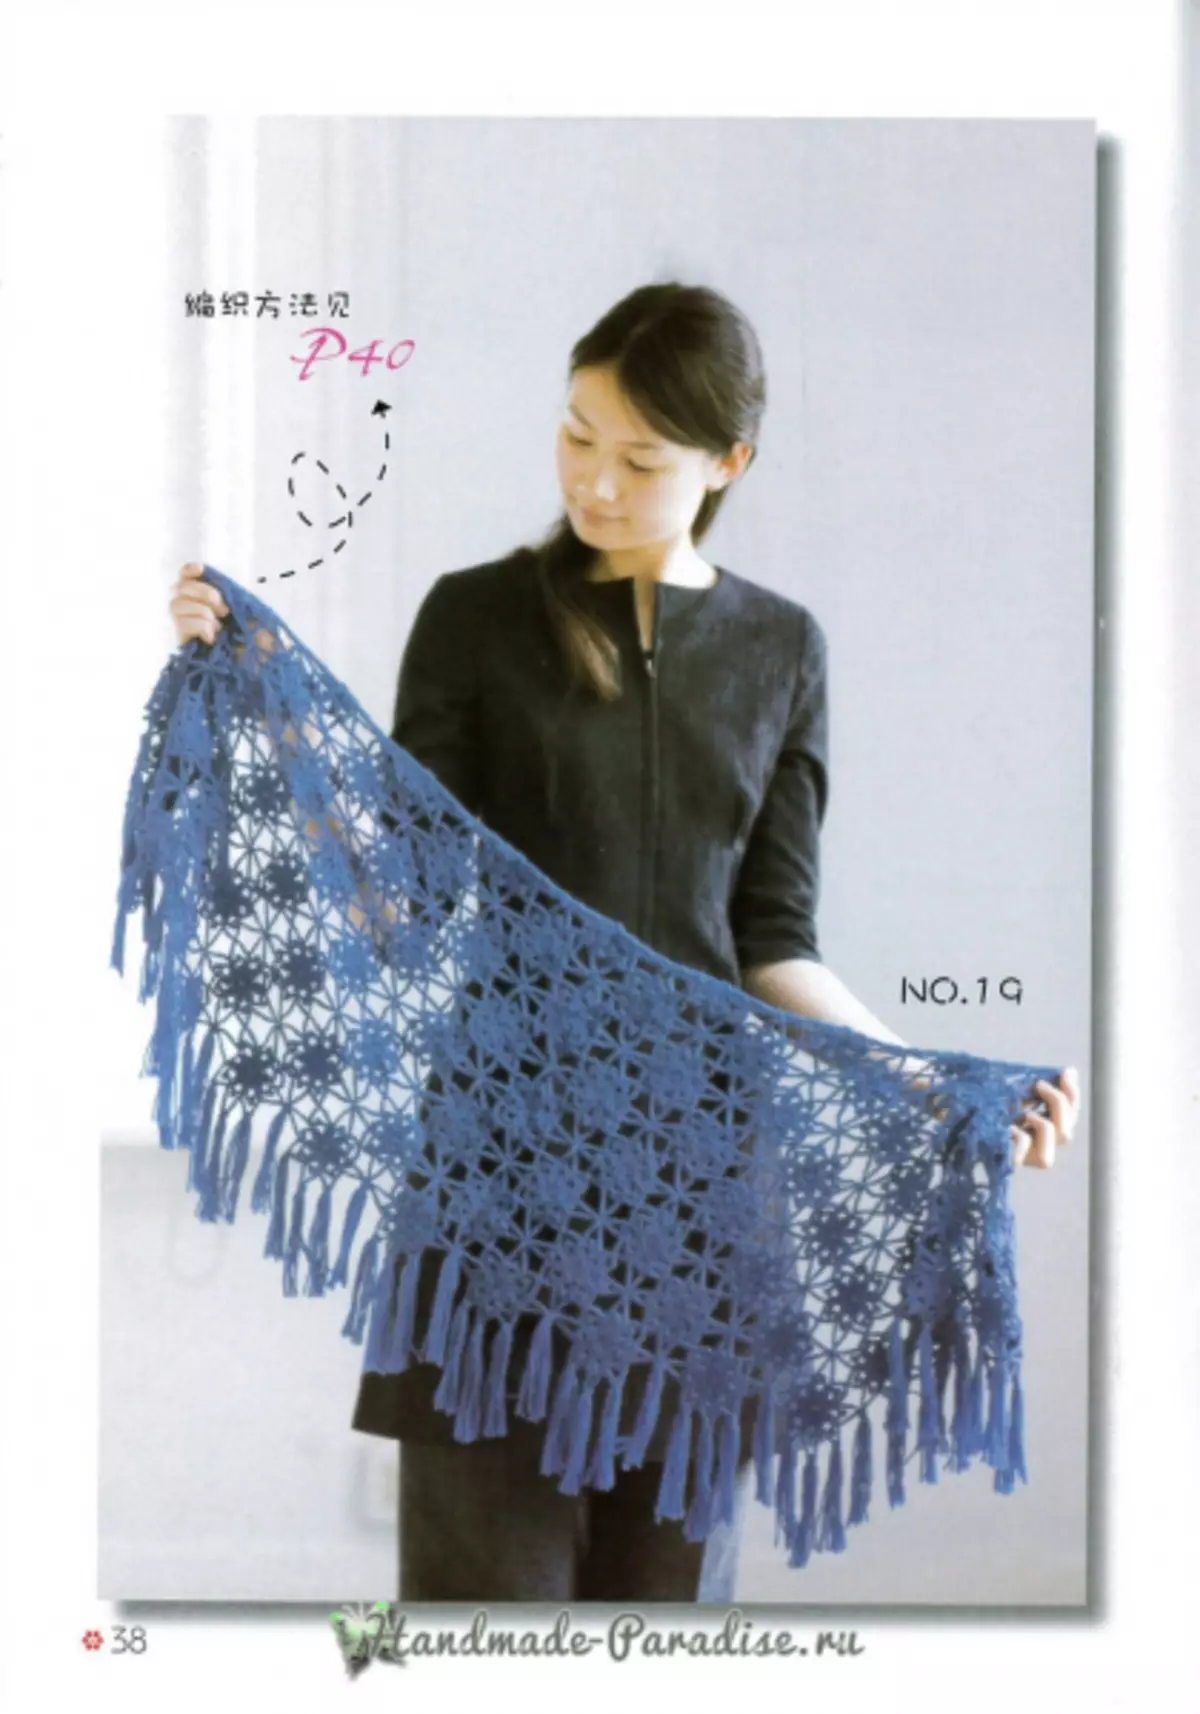 Knit kaap en poncho. Japansk tydskrift mei skema's